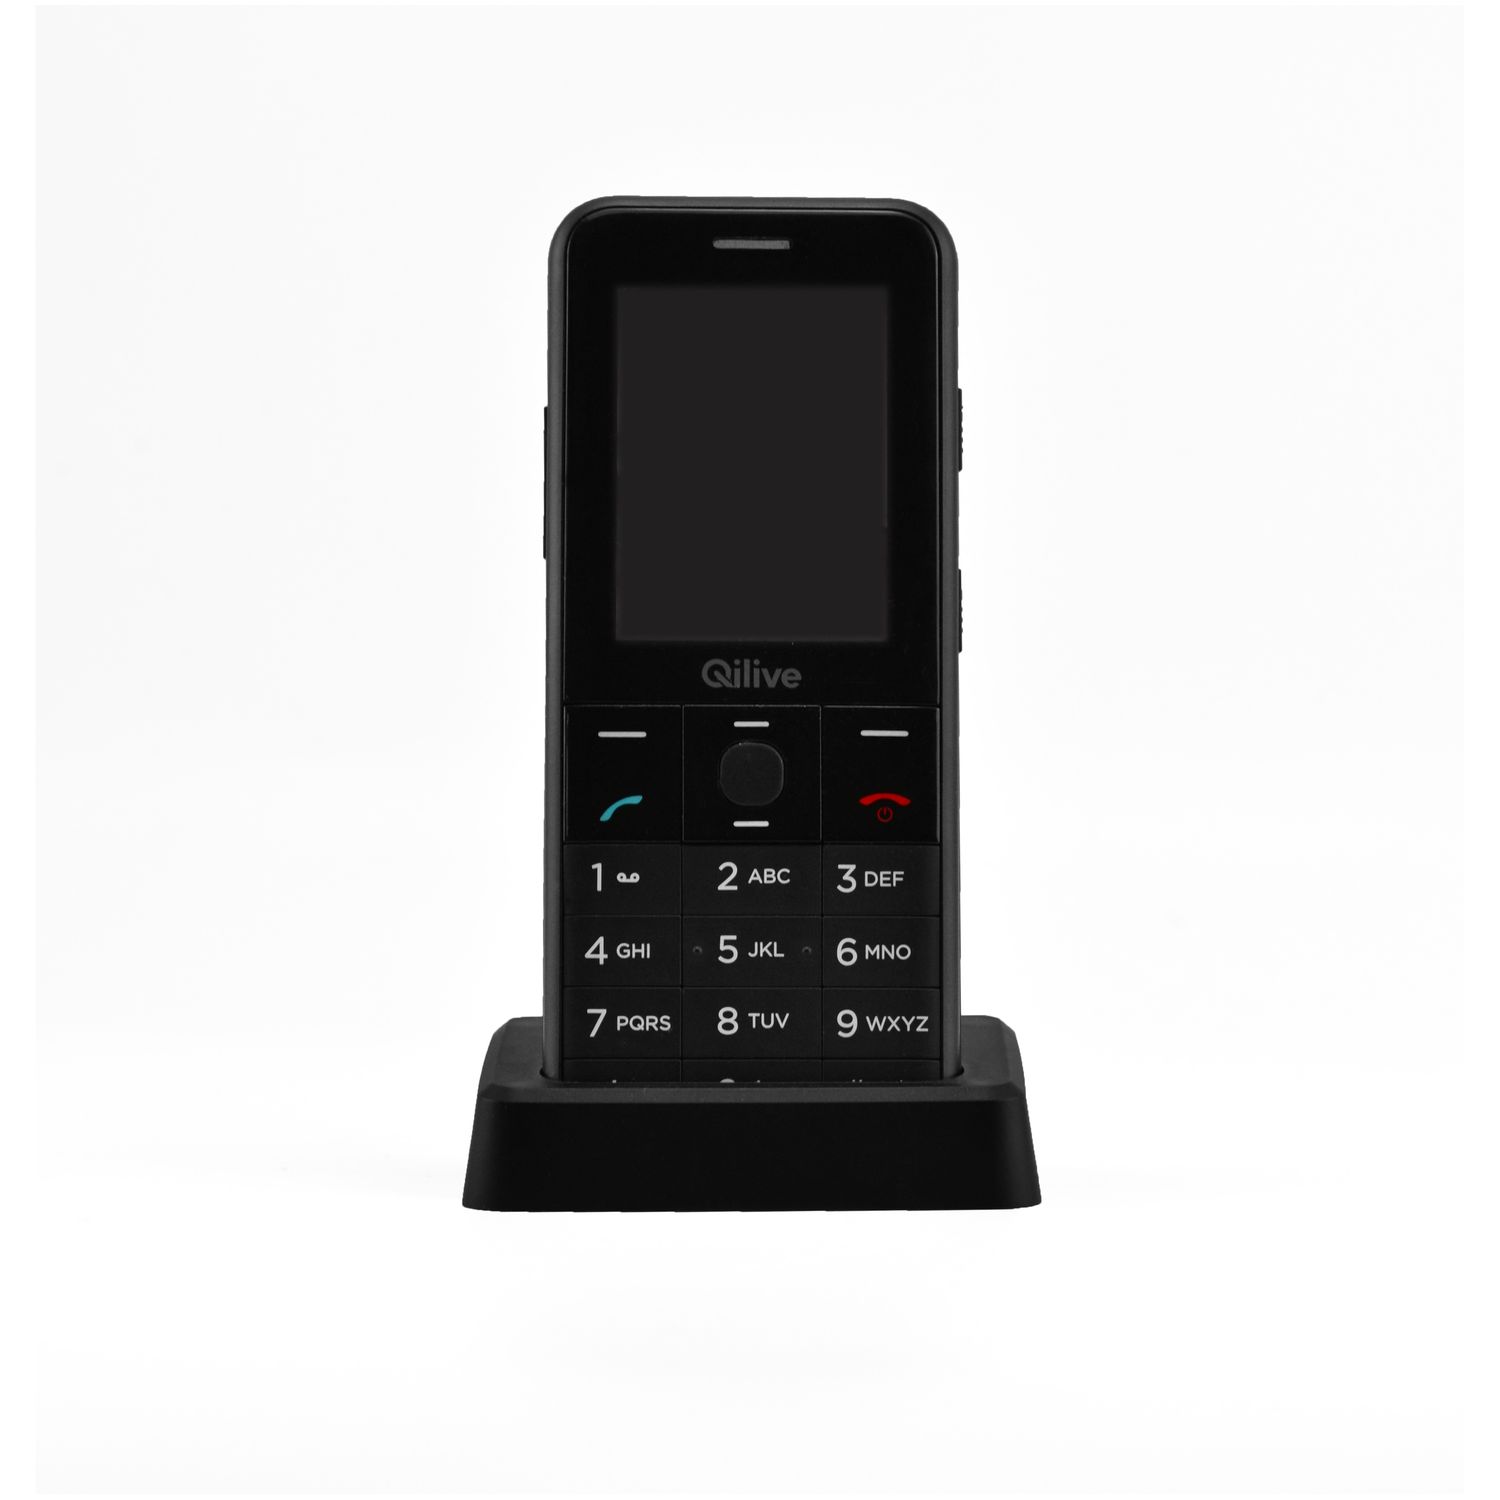 QILIVE Téléphone portable Senior 891226 Noir pas cher 